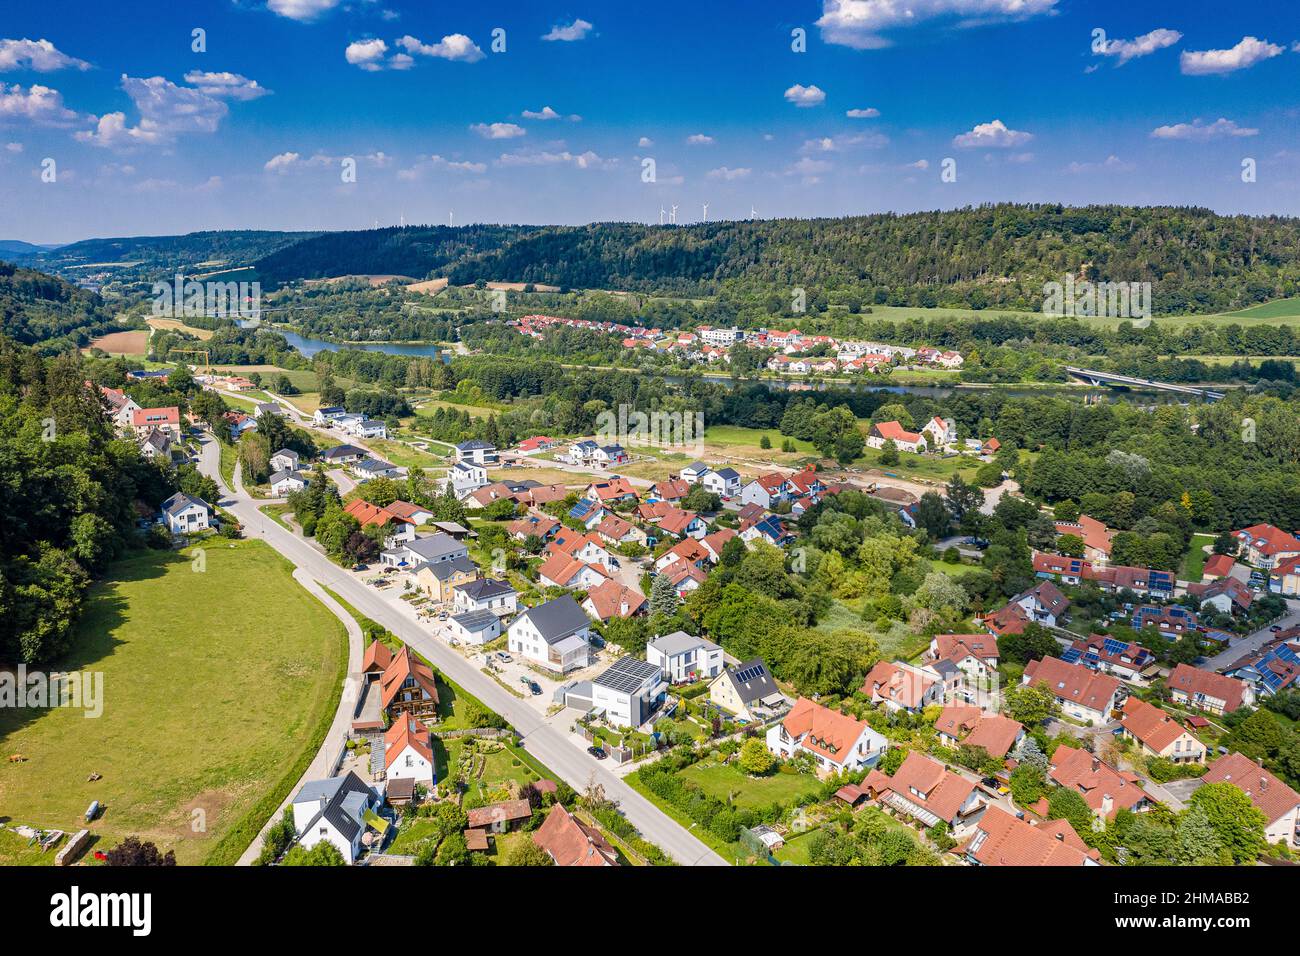 Luftbild Beilngries im Naturpark Altmühltal, Bayern, Deutschland an einem sonnigen Tag im Sommer mit Blick auf die Kanalsiedlung über Hirschberger Str Foto de stock